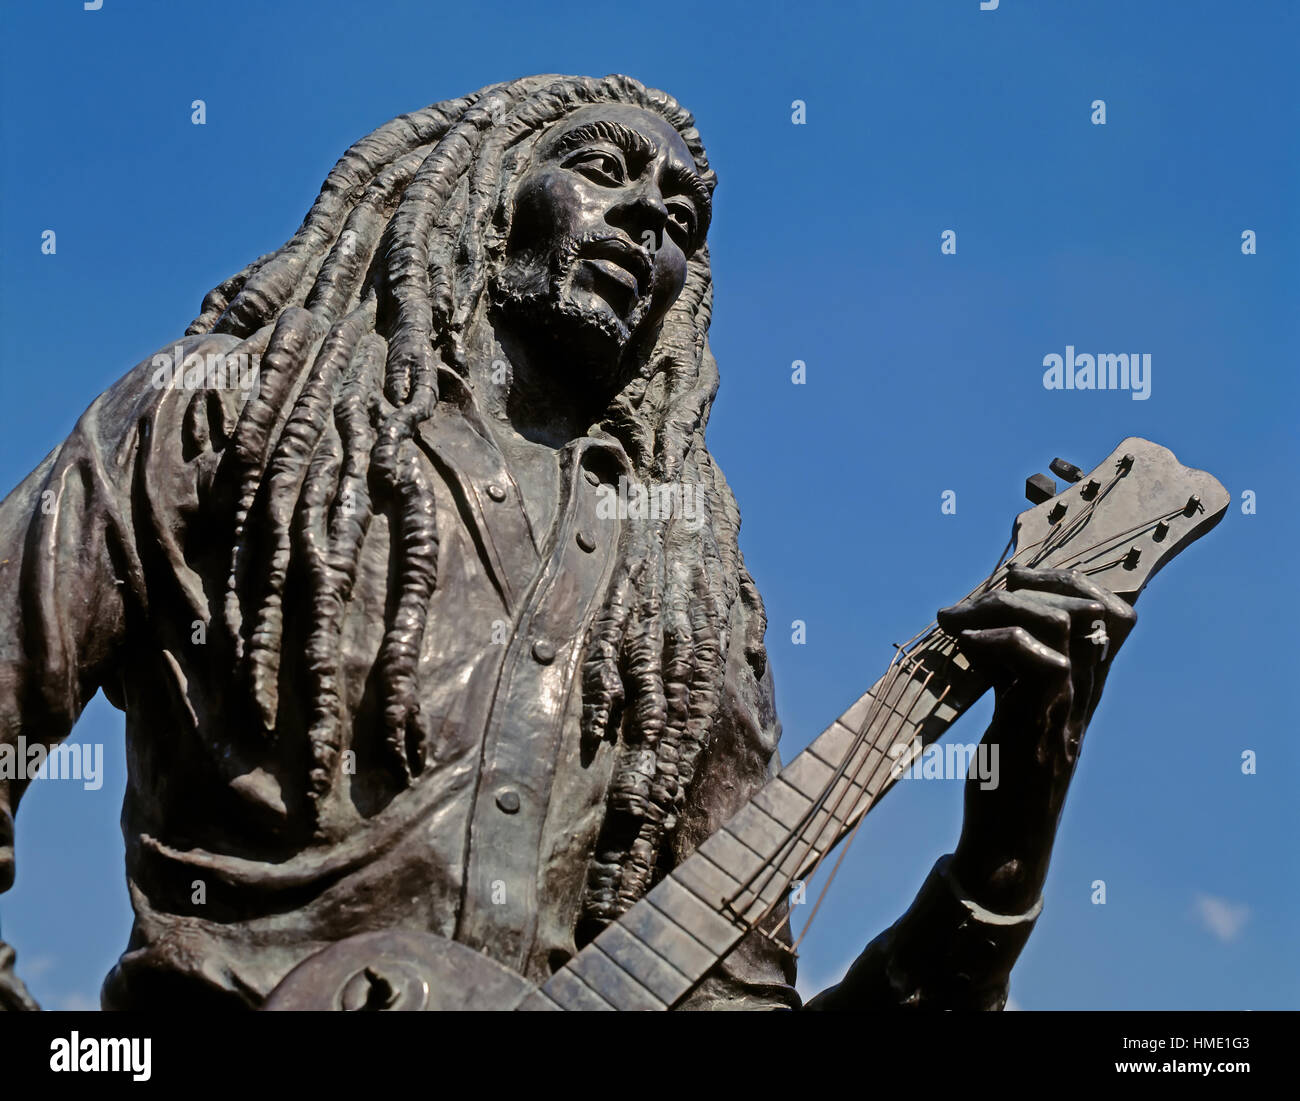 Kingston, Jamaica. Statua di bronzo del cantautore Bob Marley, 1945 - 1981, nel parco della celebrità. La statua è stata creata dalla scultore giamaicano Alvin Foto Stock